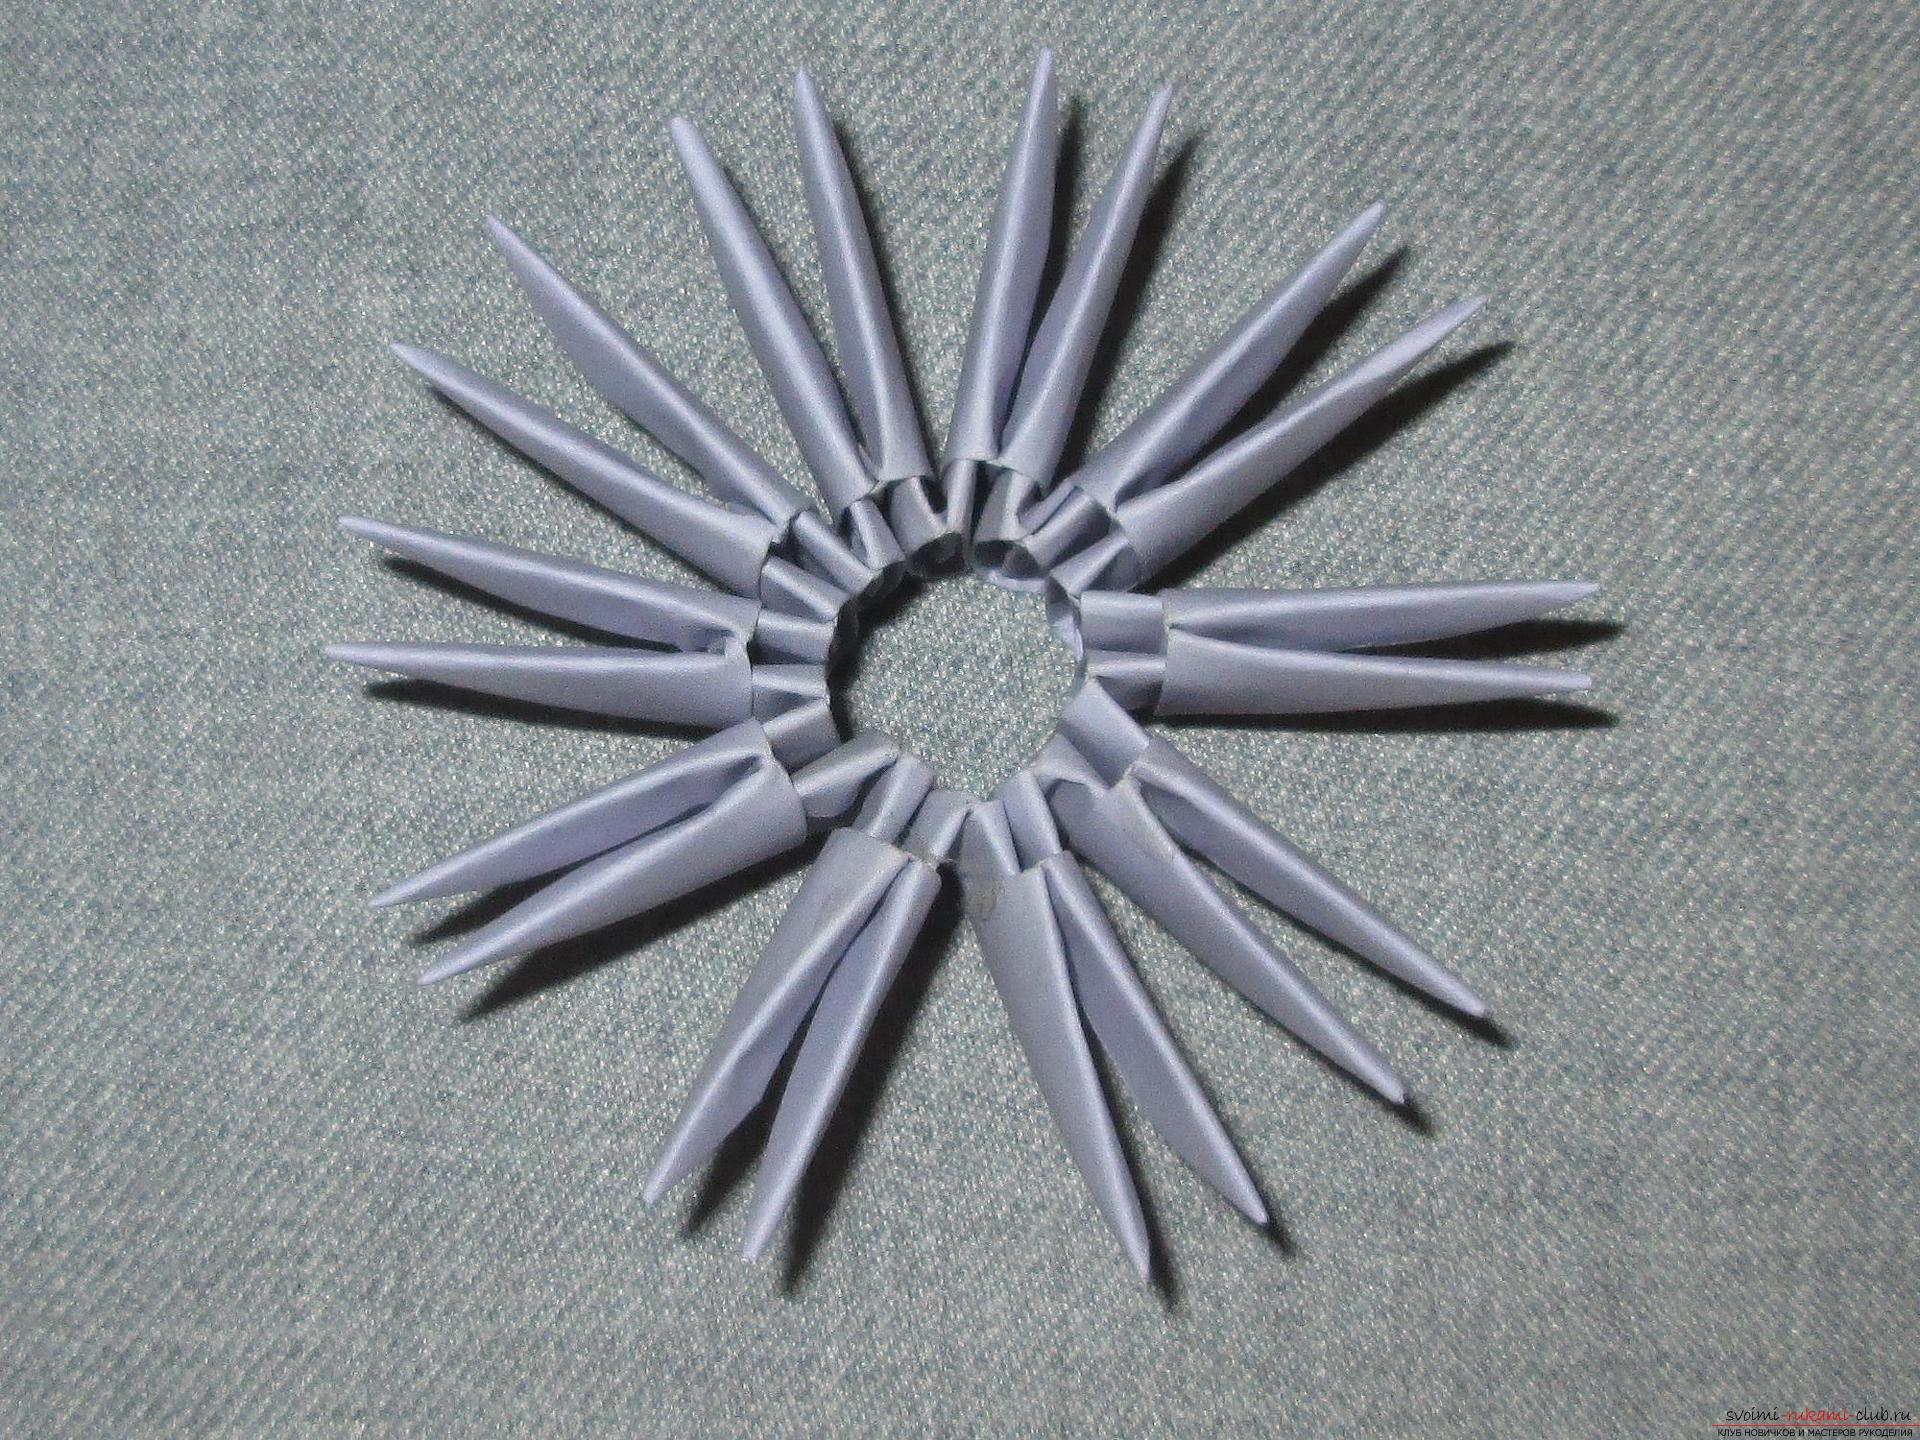 Als u wilt leren hoe u een modulaire origami maakt, bekijk dan onze masterclass